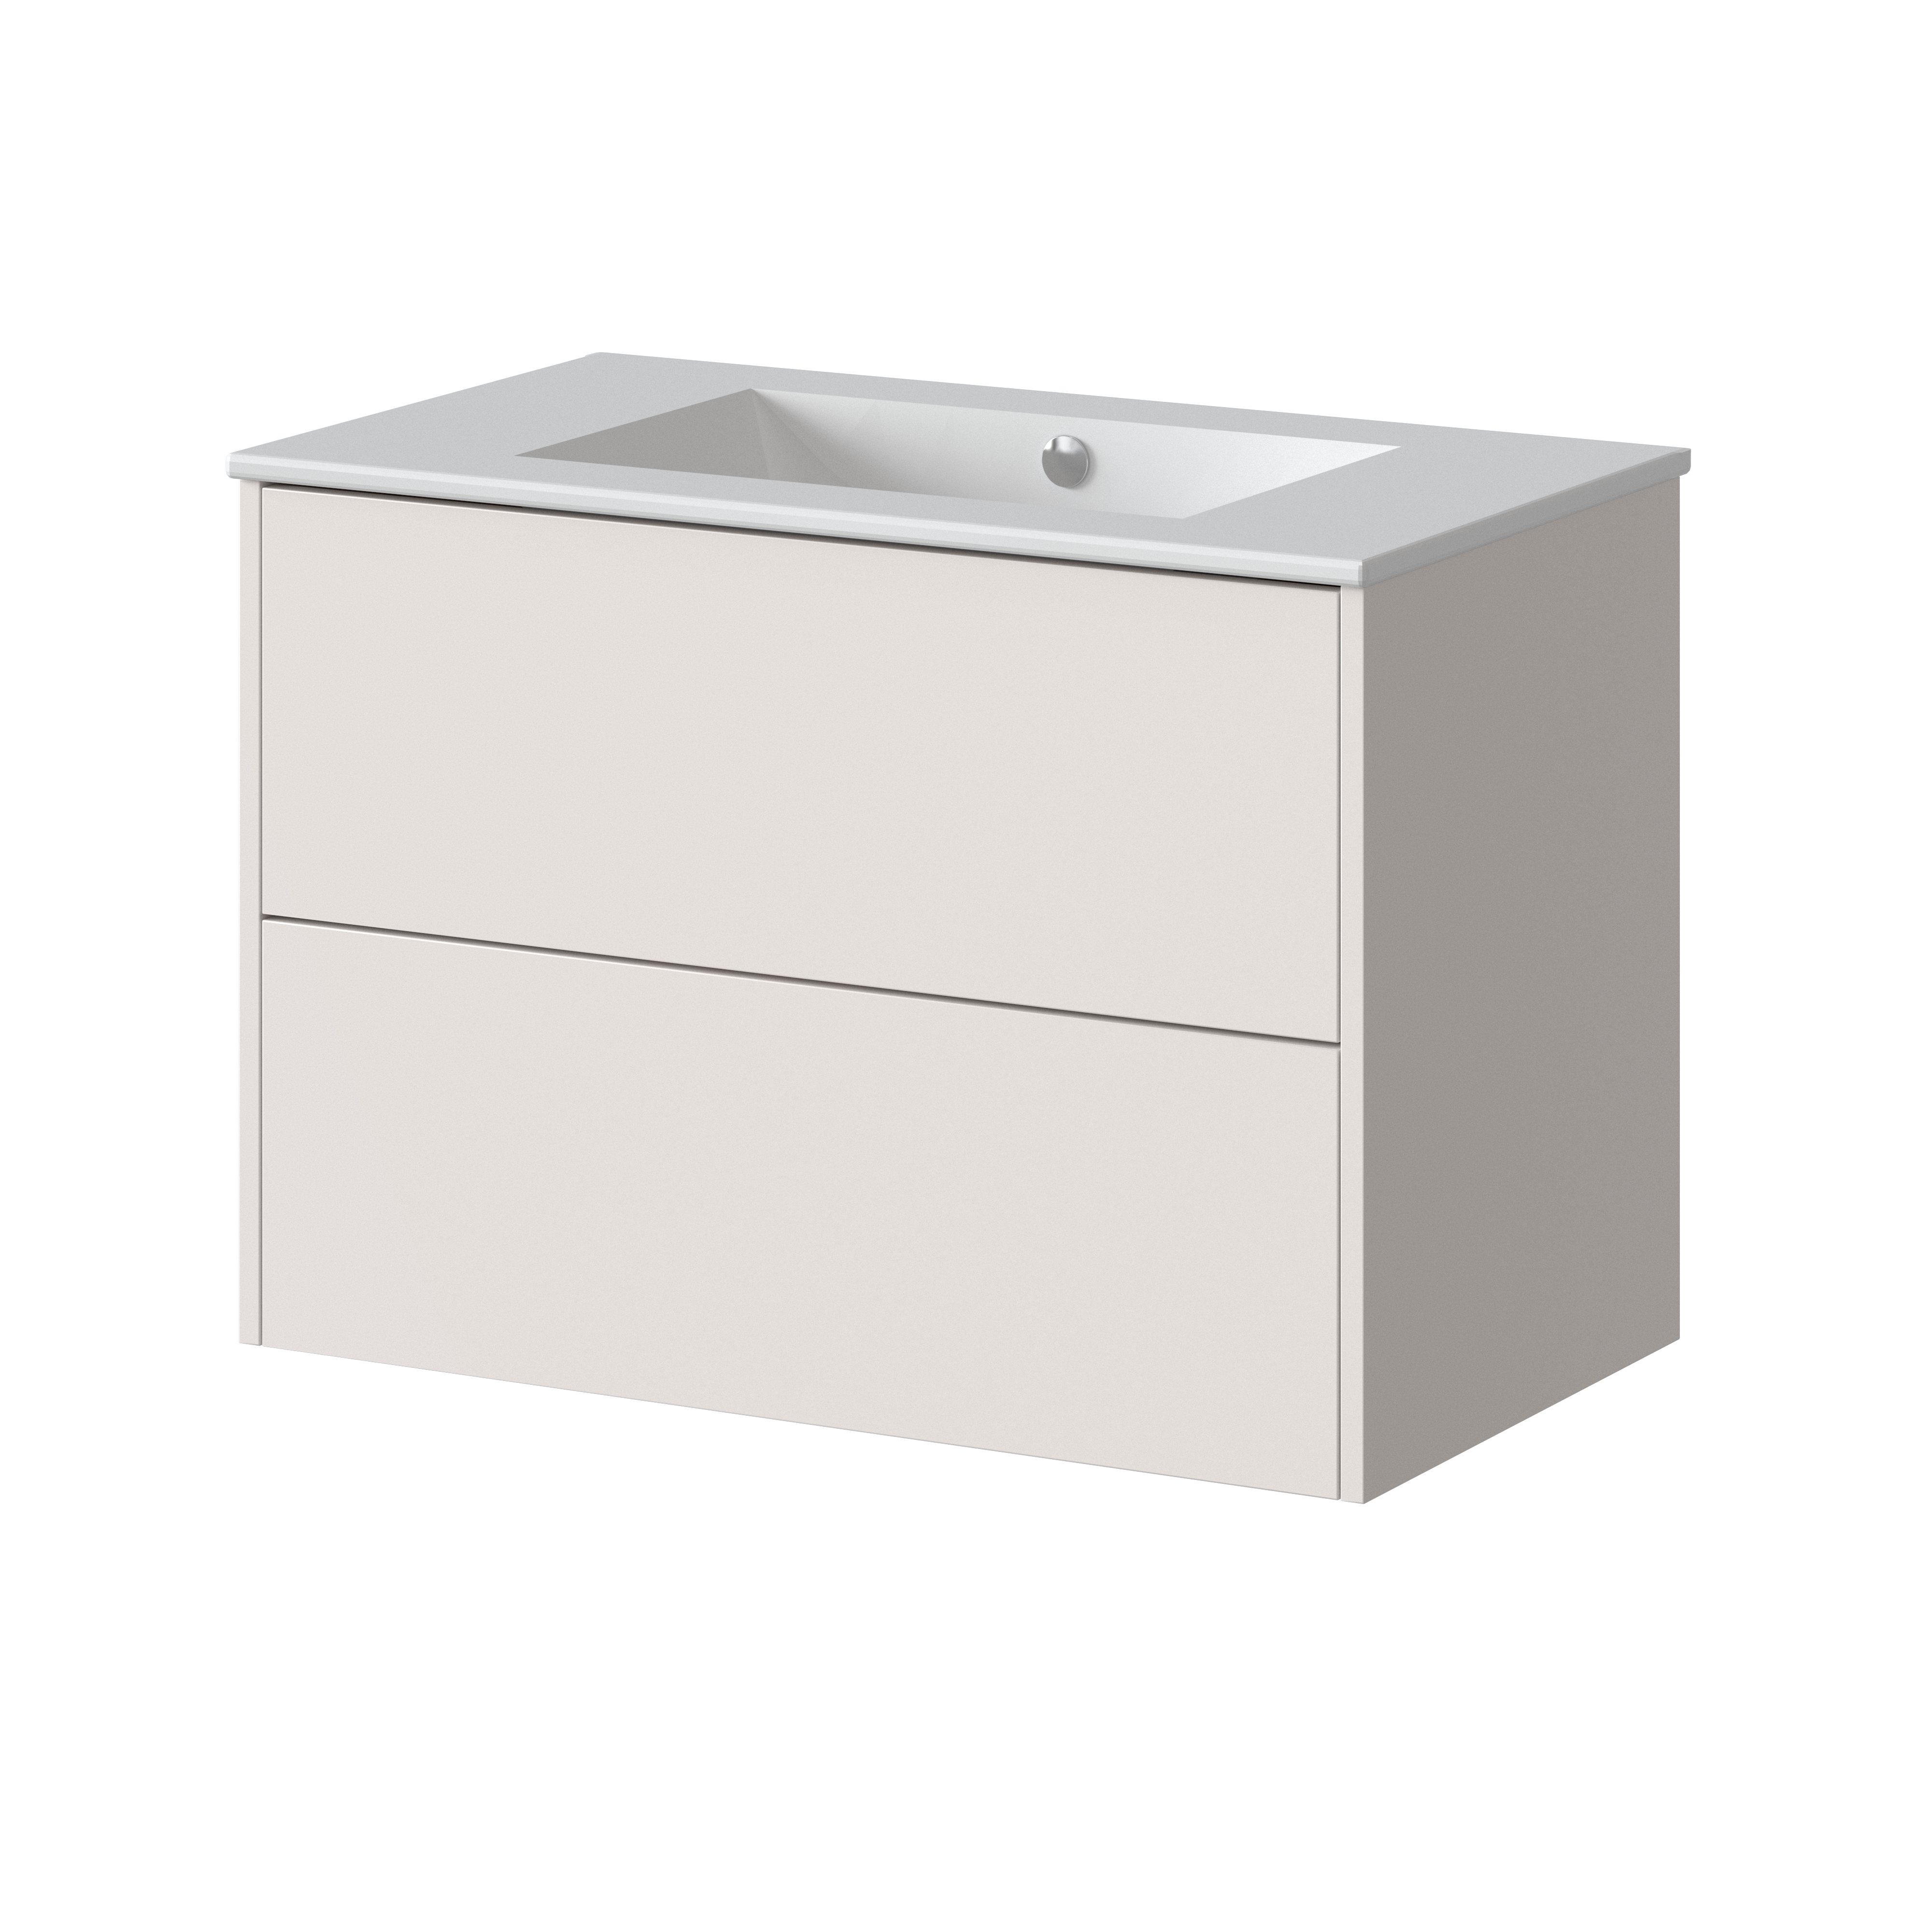 Mueble de baño dreams blanco roto 80x45 cm